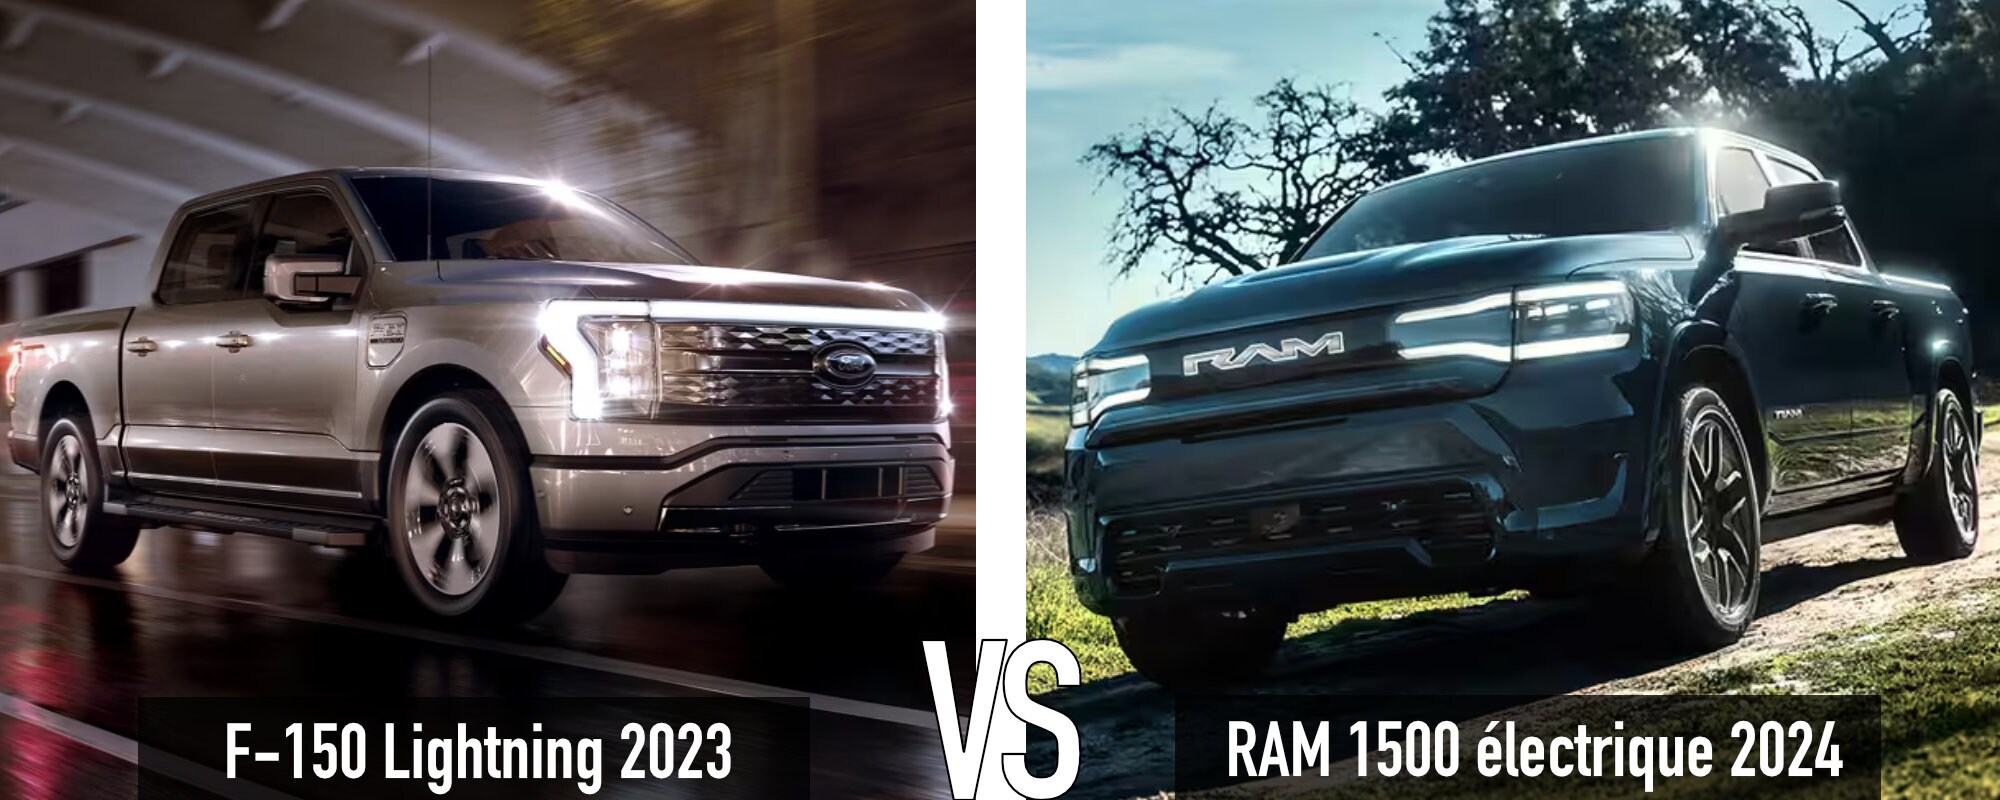 Ram 1500 2024 électrique vs Ford F-150 2023 Lightning